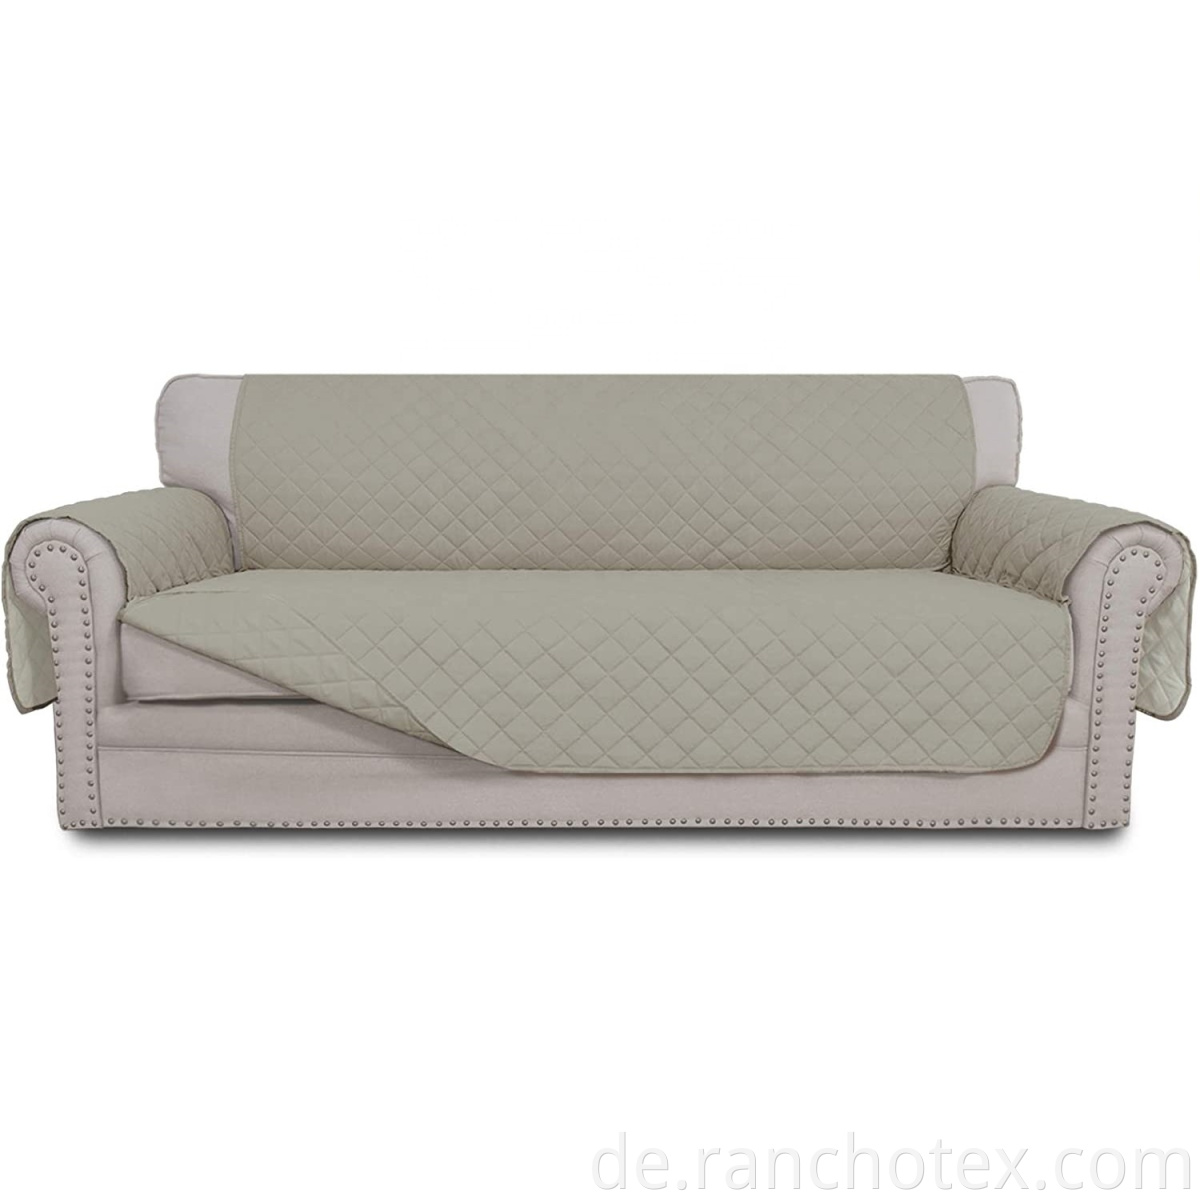 Oeko-TEX-Zertifikat wasserdichte Sofa Deckung 100%Polyester Mikrofaser-Sofa Couch Deckungen Schlupfdecke wasserfest